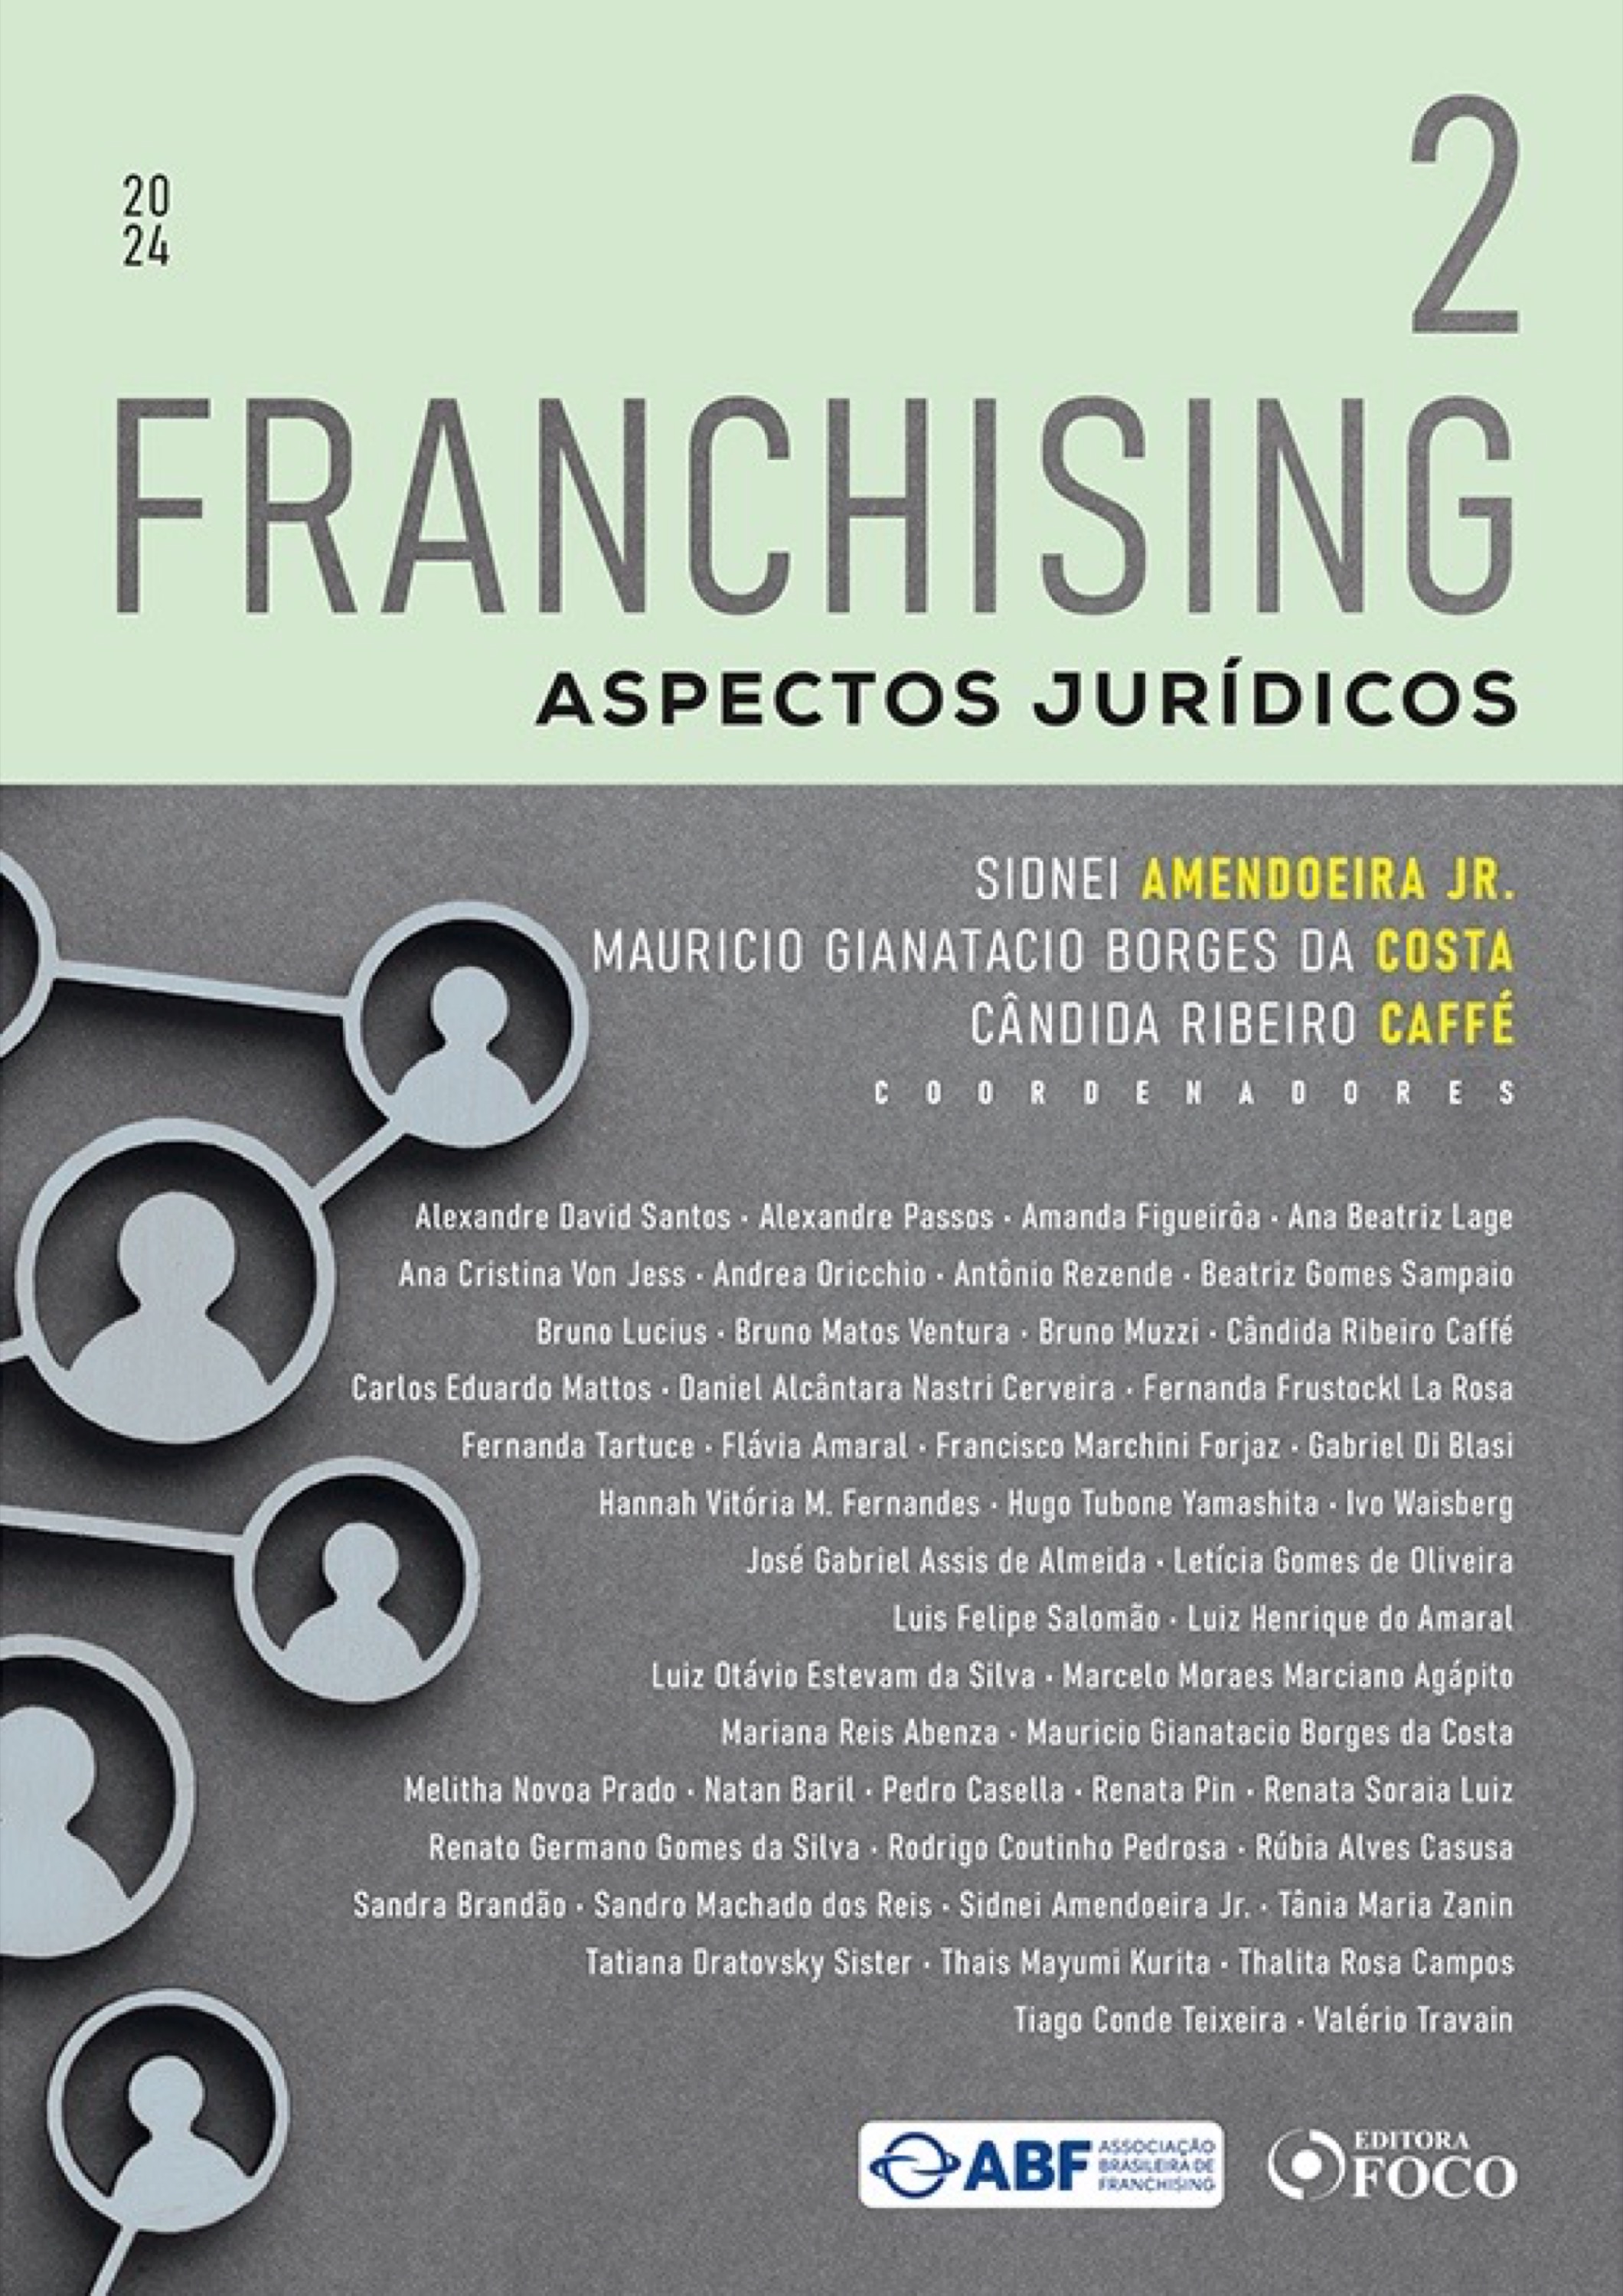 Franchising - Aspectos Jurídicos - Vol. 2